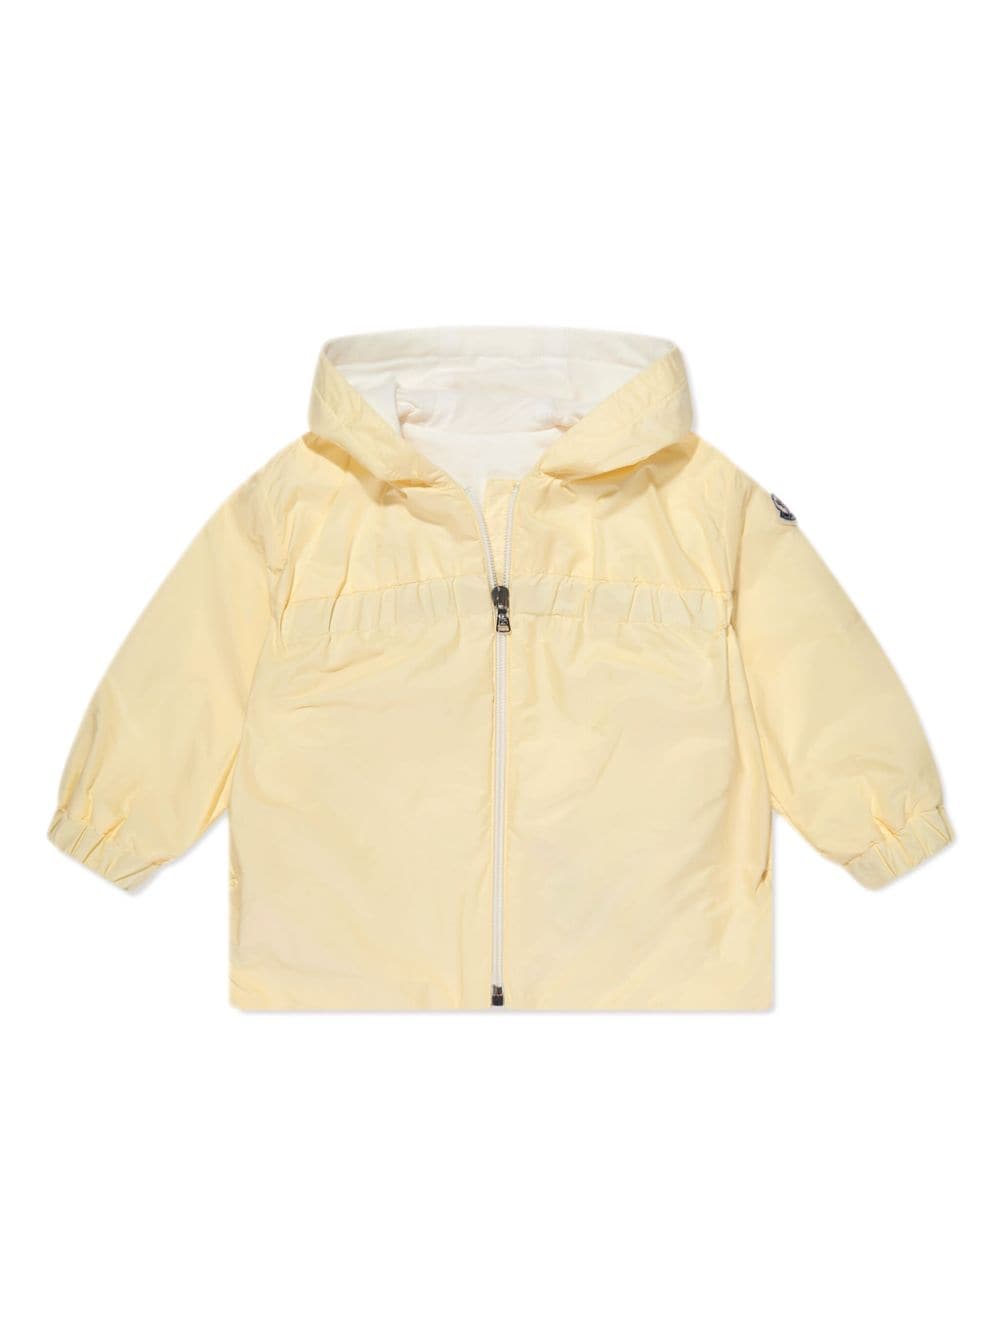 Moncler Enfant cotton hooded raincoat - Yellow von Moncler Enfant